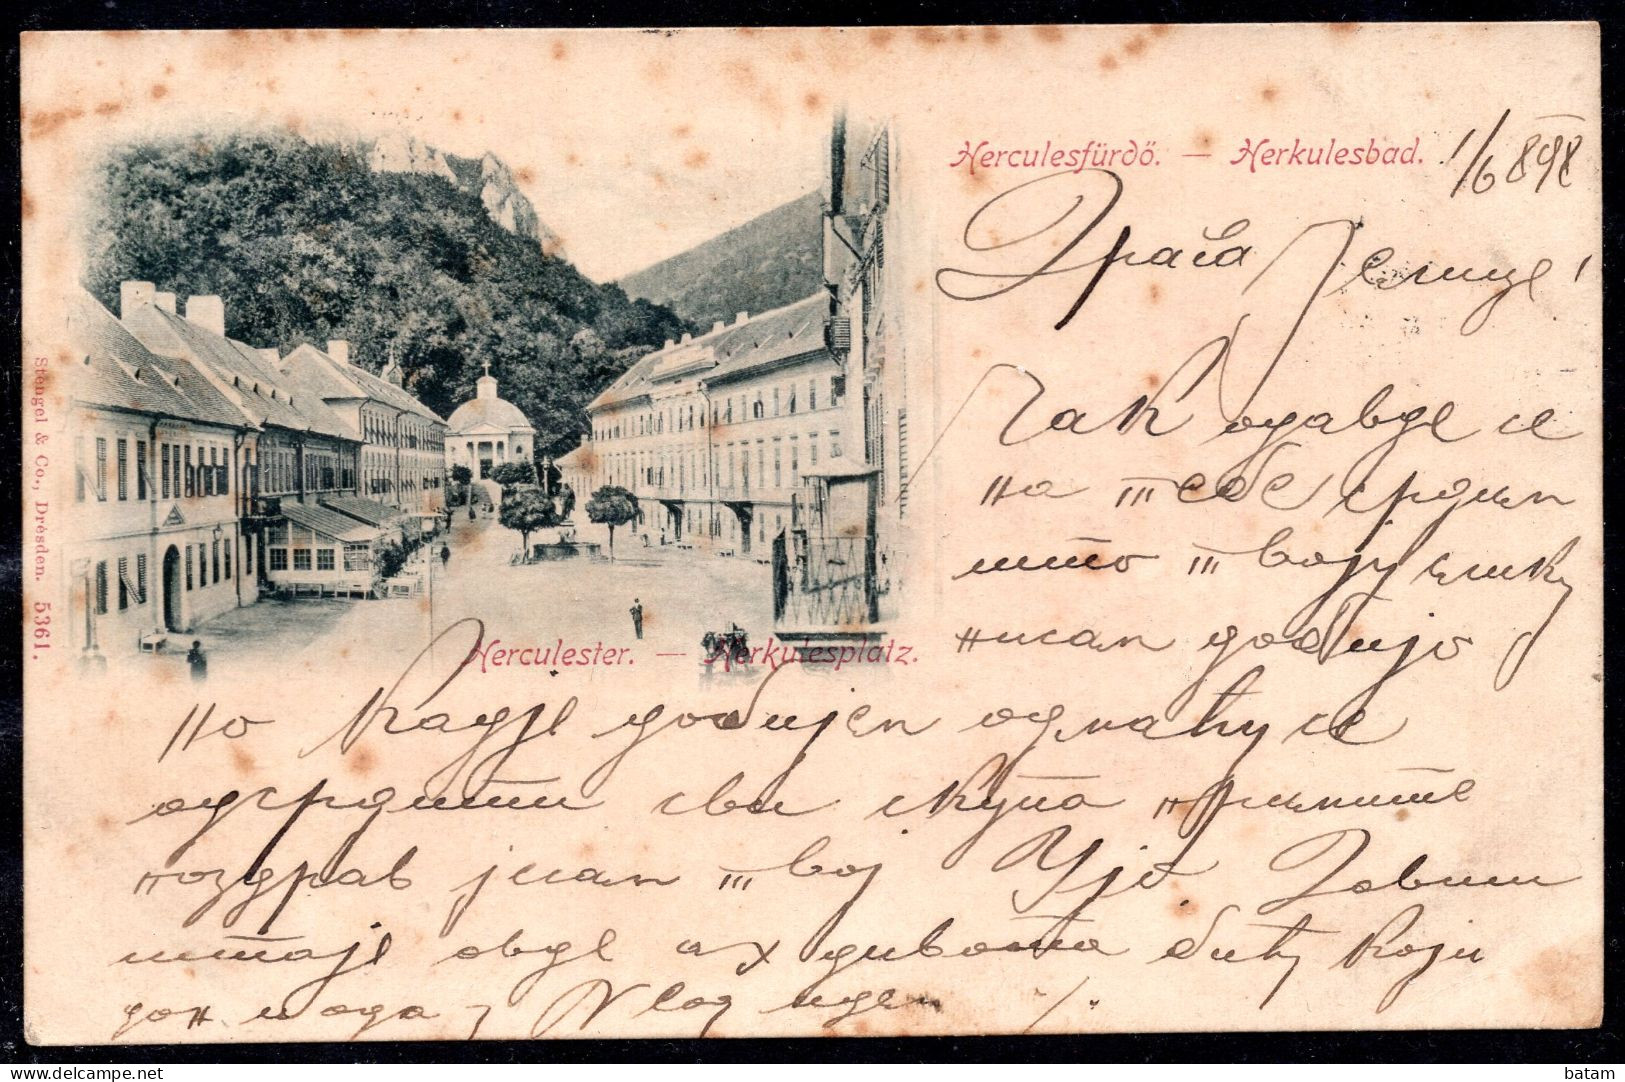 707 - Romania 1898 - Herkulesfurdo - Herculane Spa Town In Romanian Banat - Postcard - Romania